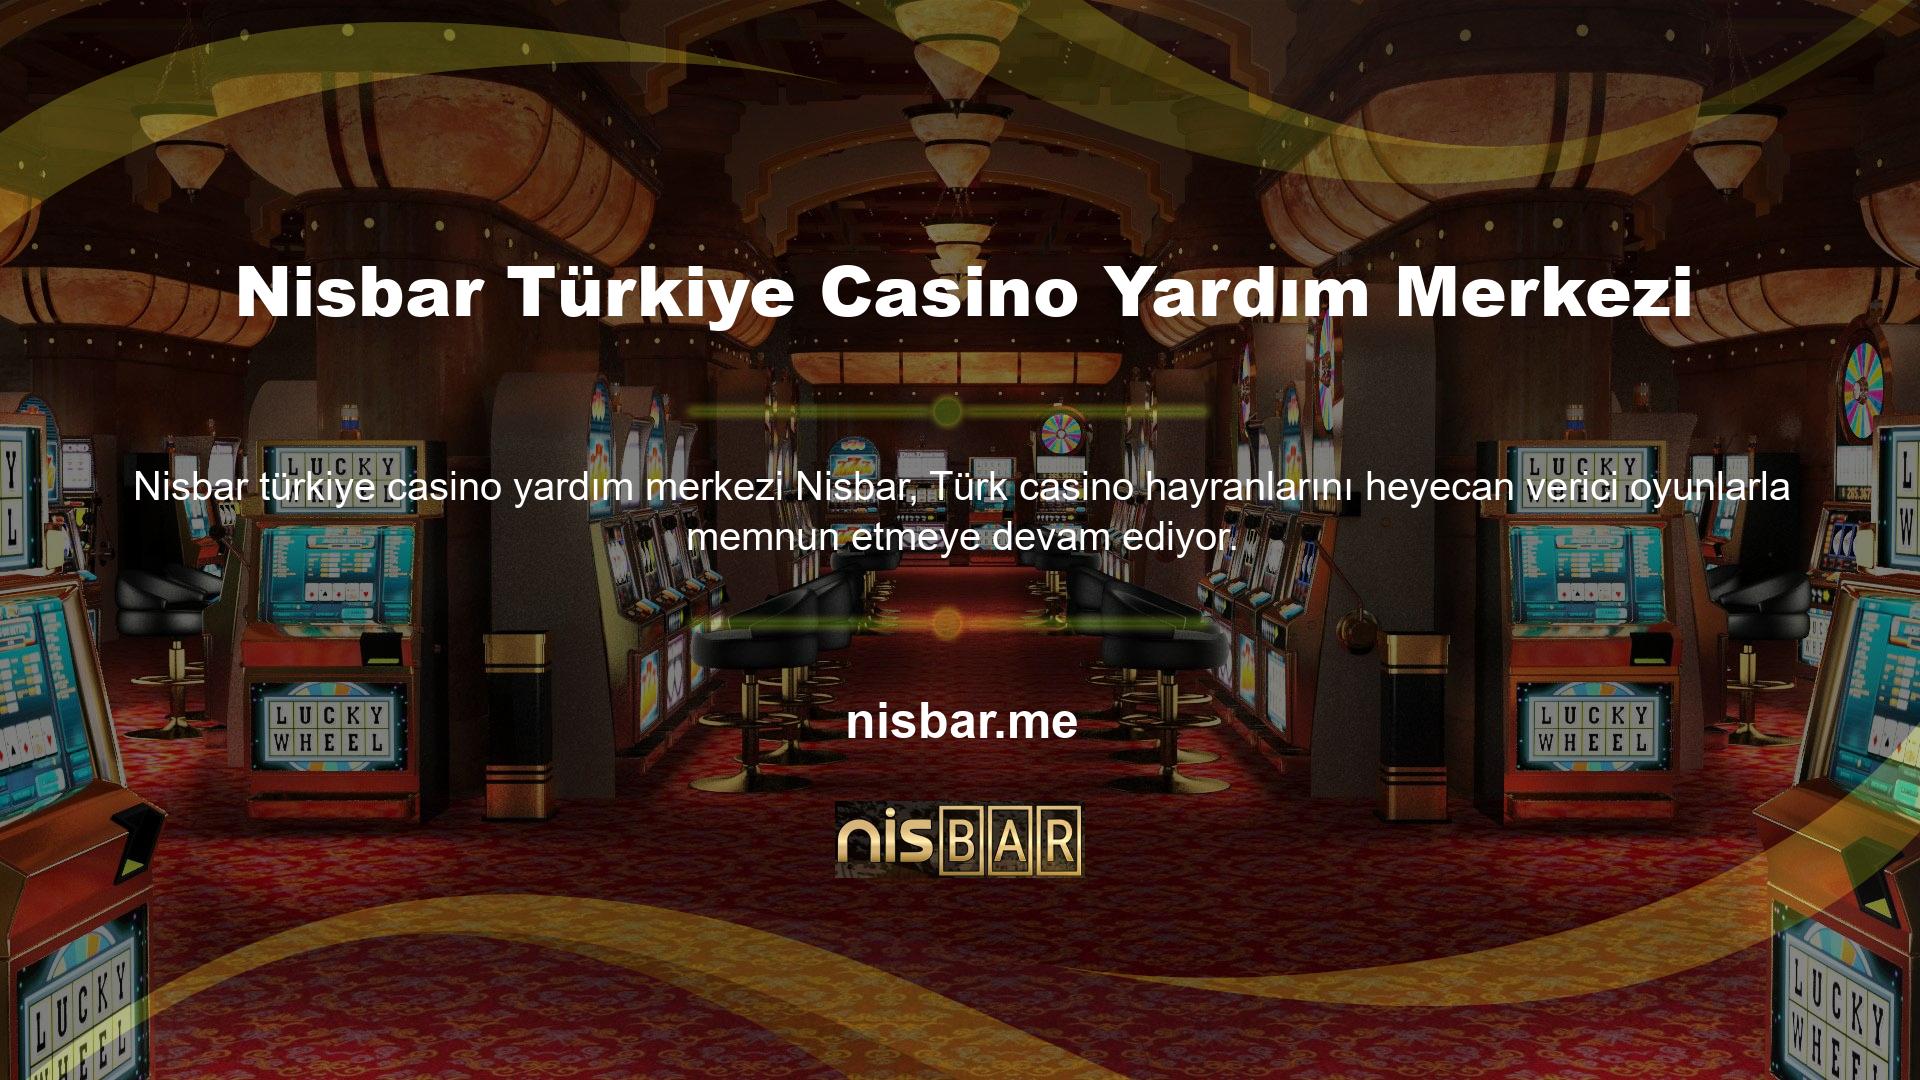 Sitenin casino oyun platformu, oyuncunun ilk tercihidir